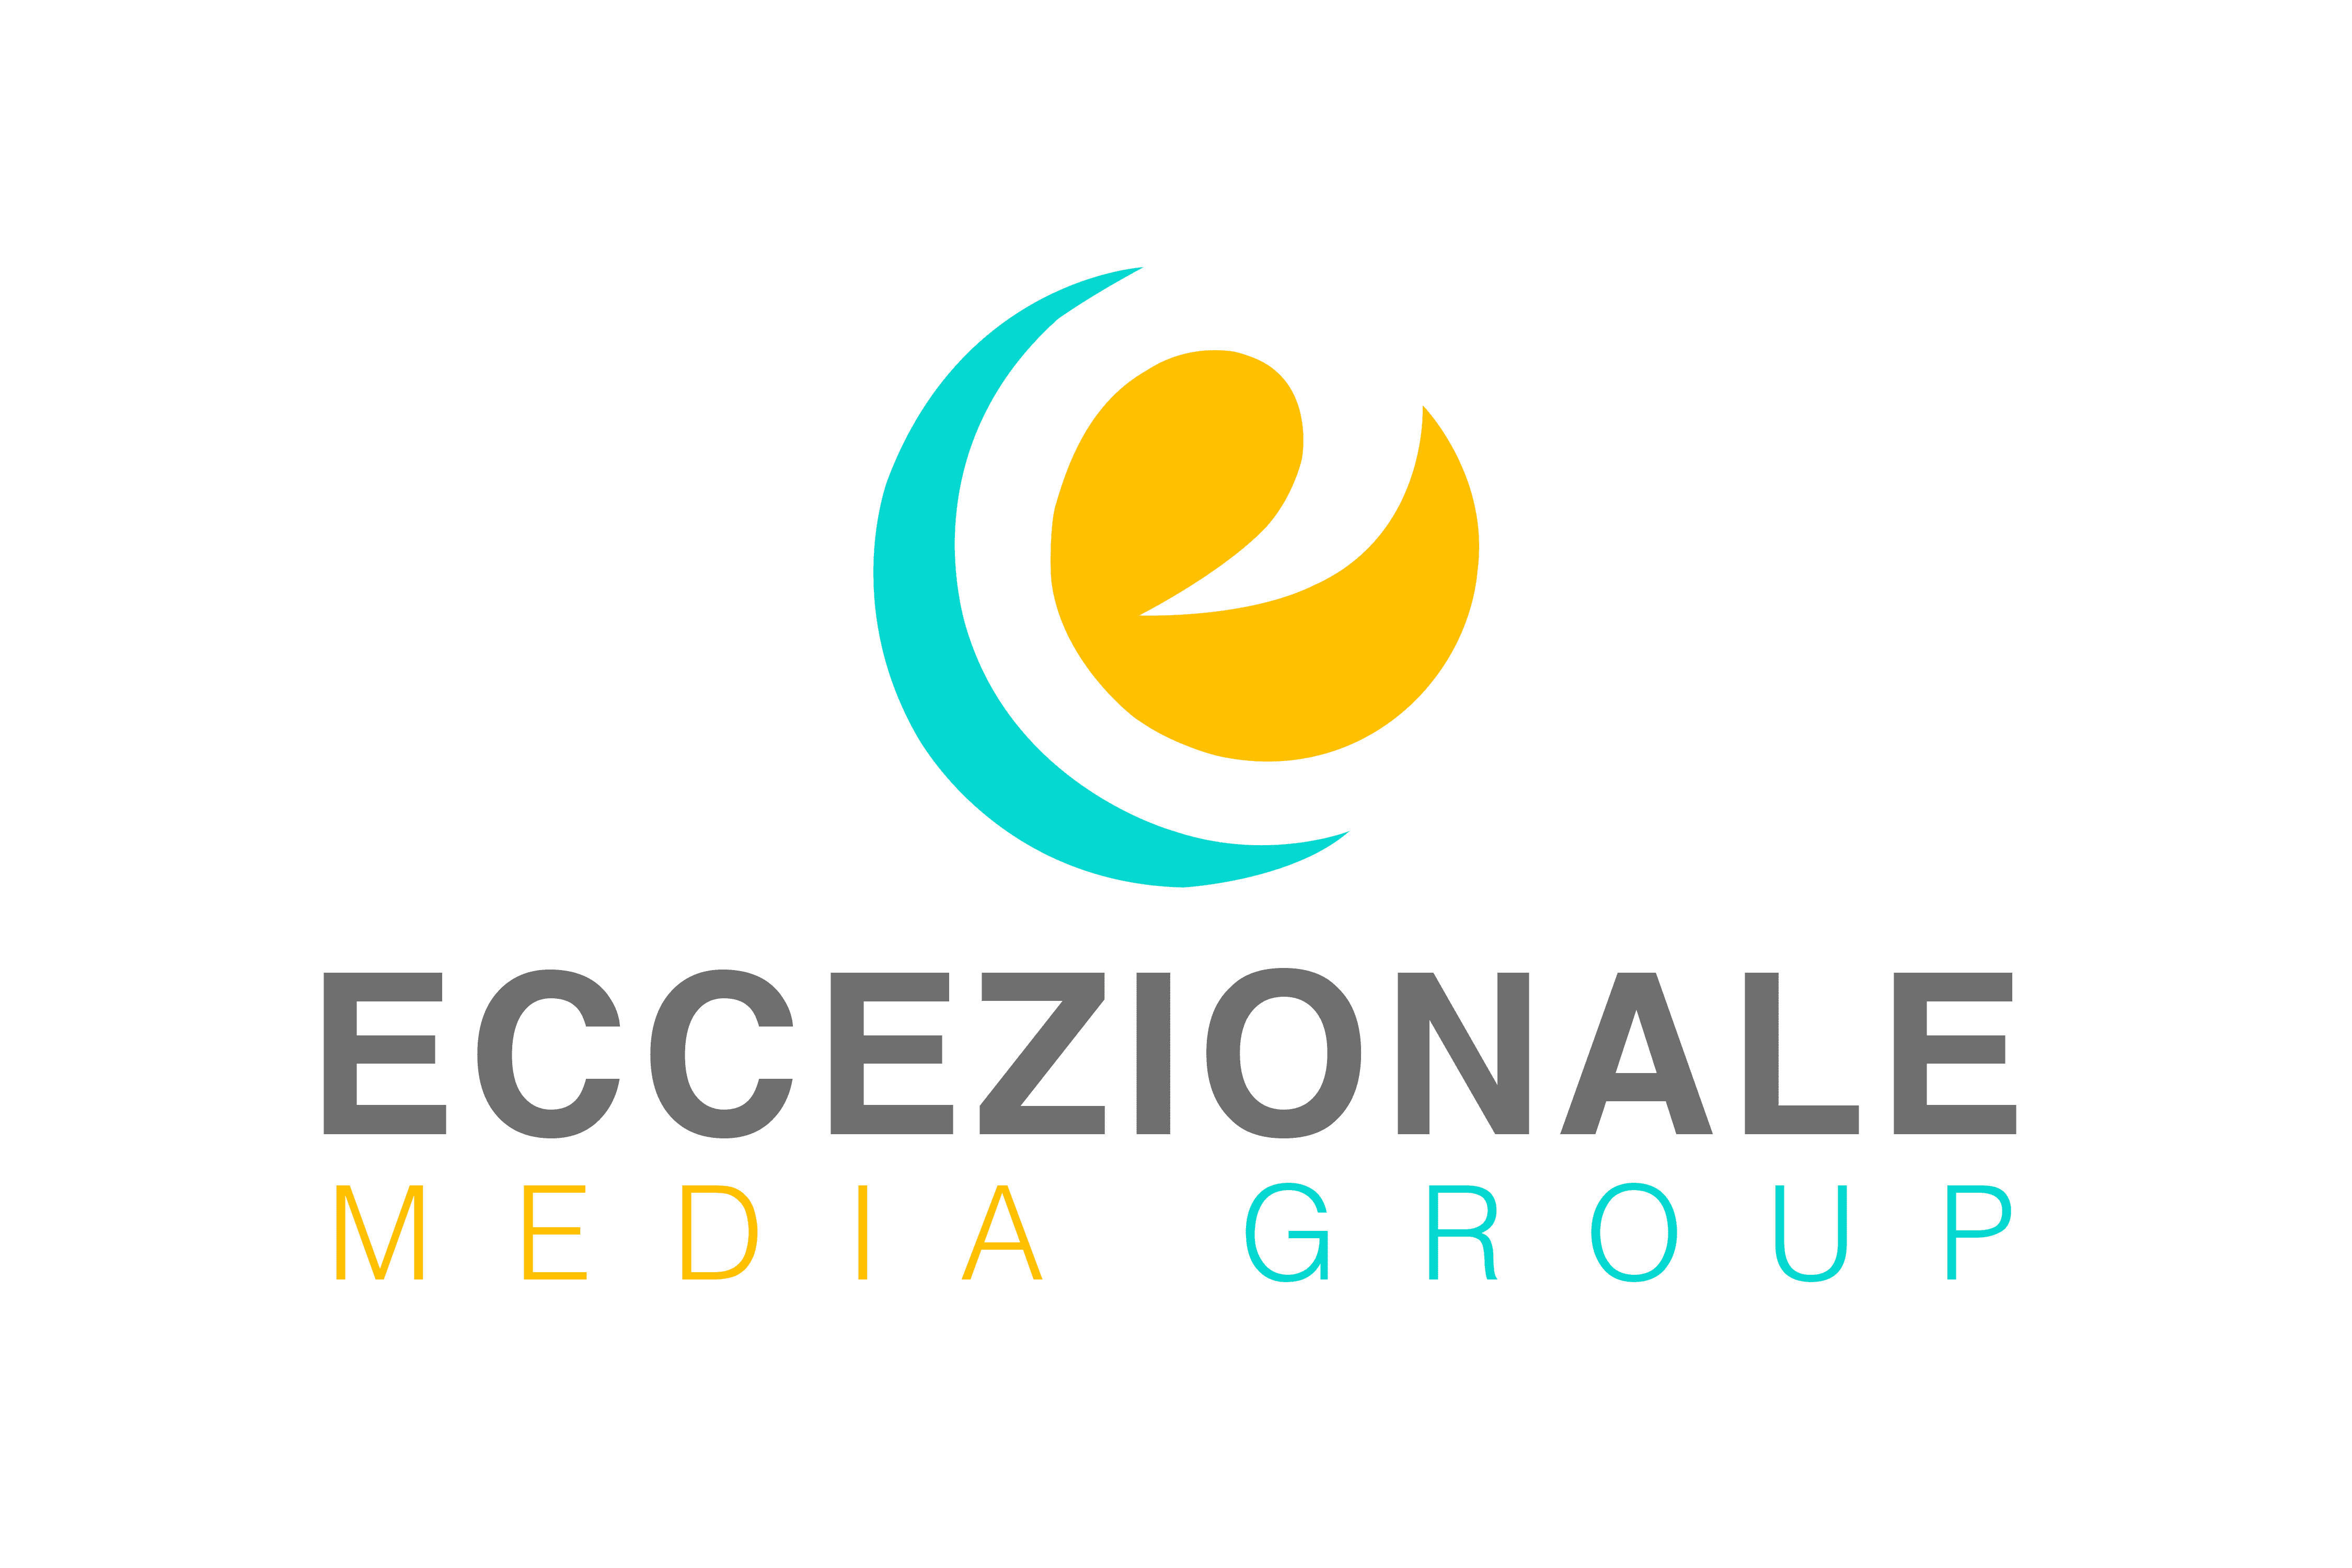 Eccezionale Media Group